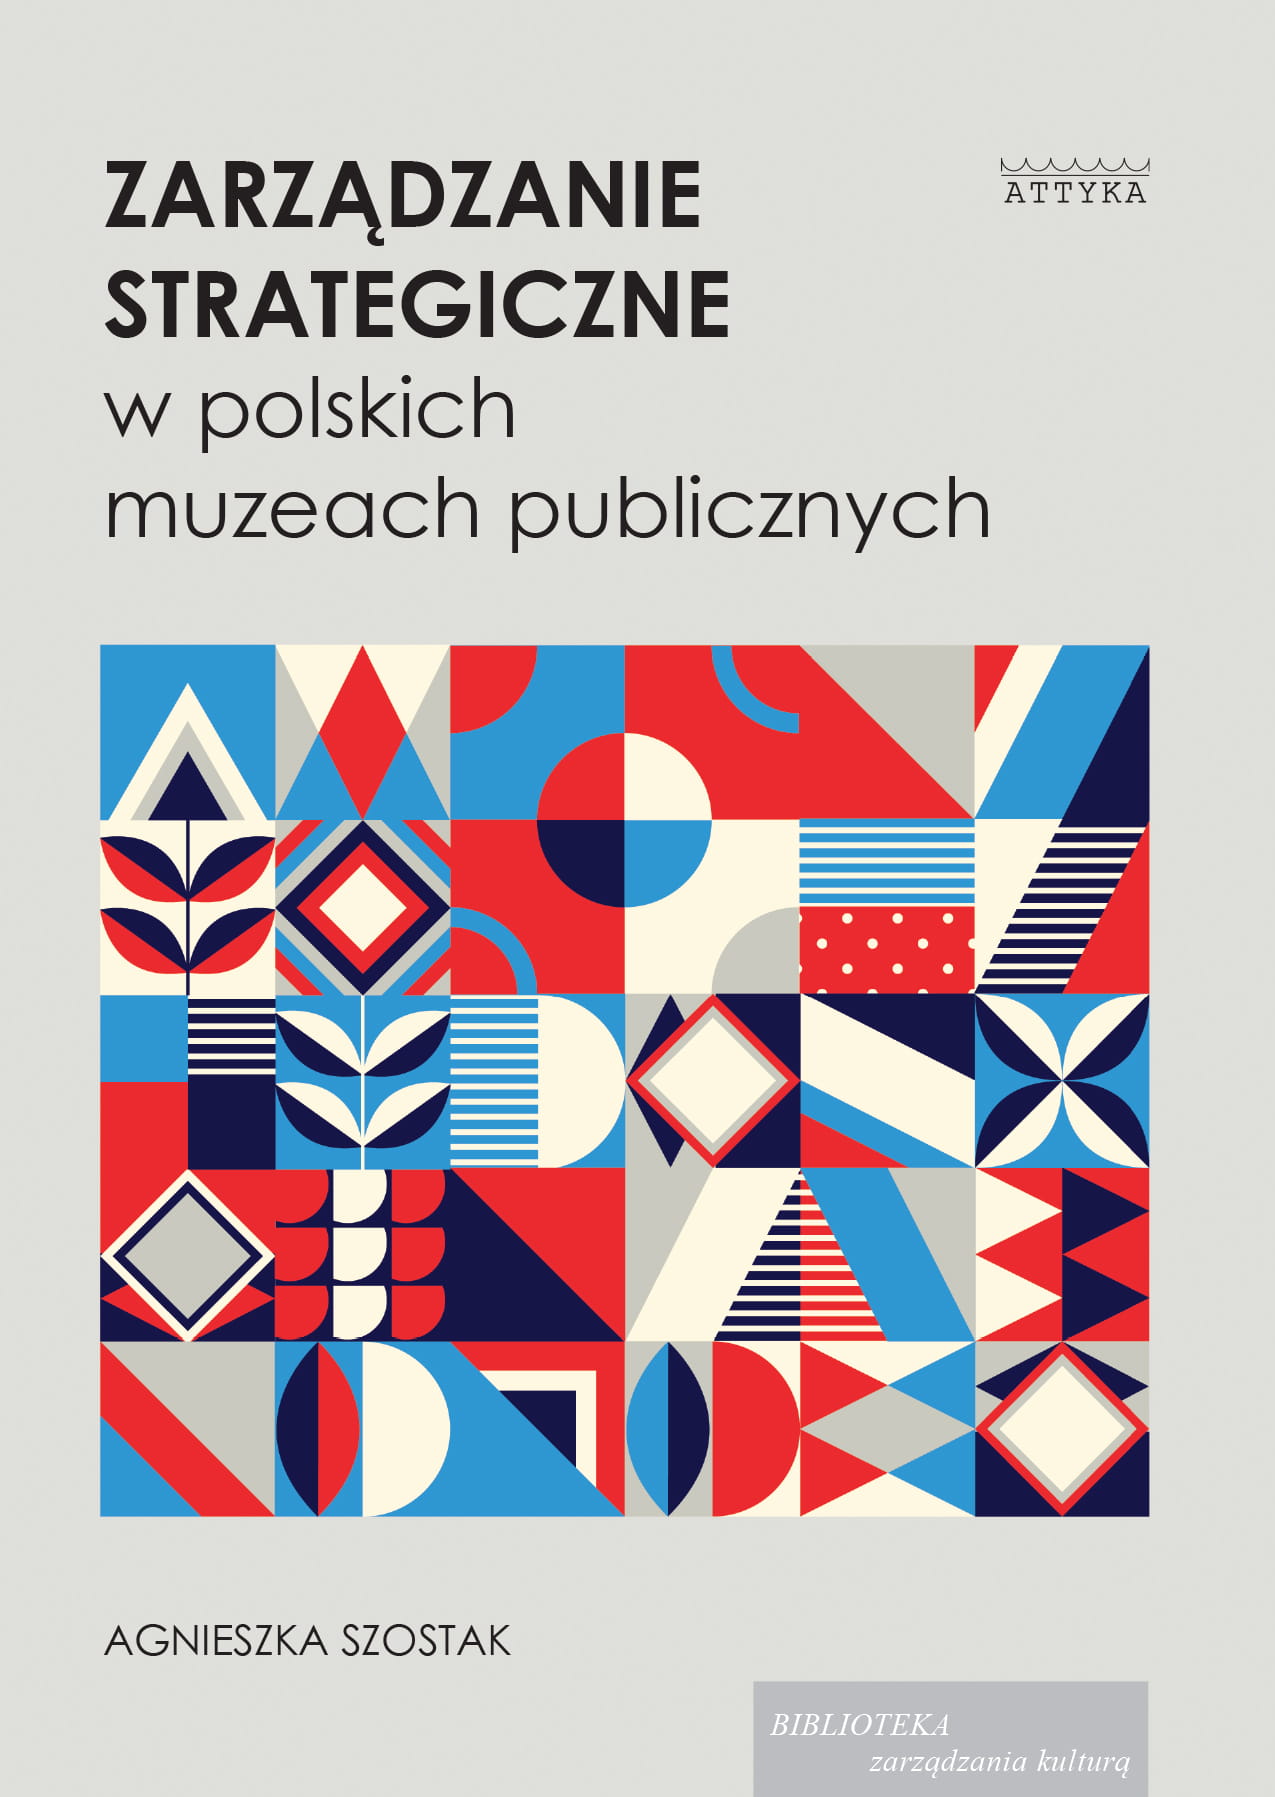 Okładka książki. W prawym rogu logo wydawnictwa Attyka. U góry napis "Zarządzanie strategiczne w polskich muzeach publicznych" poniżej geometryczne wzory w kolorze czerwonym i niebieskim